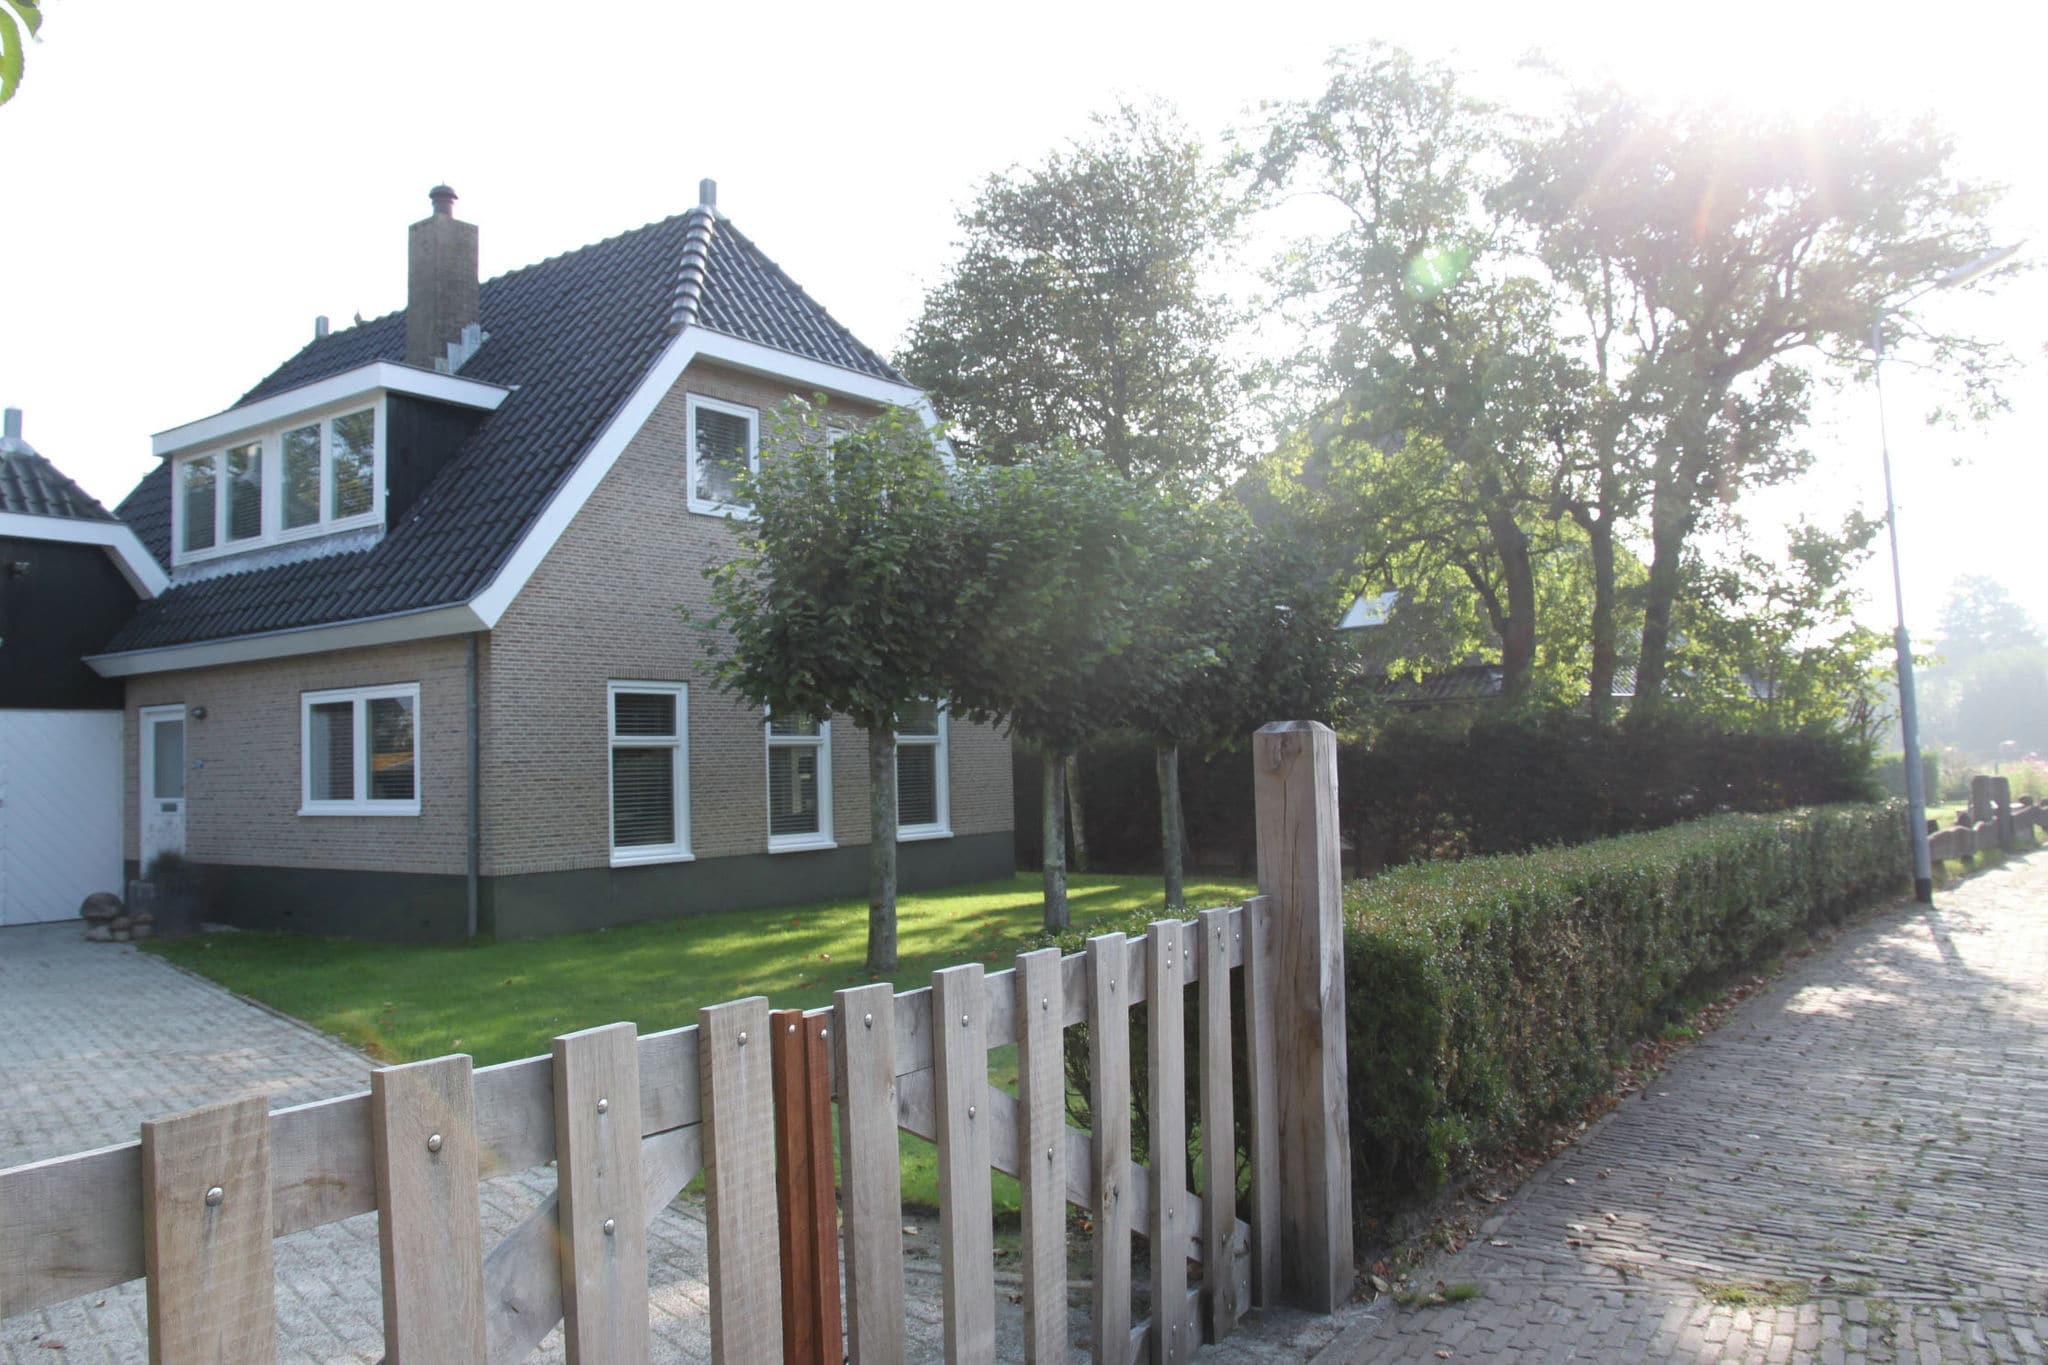 Modern Villa in Groet with Garden